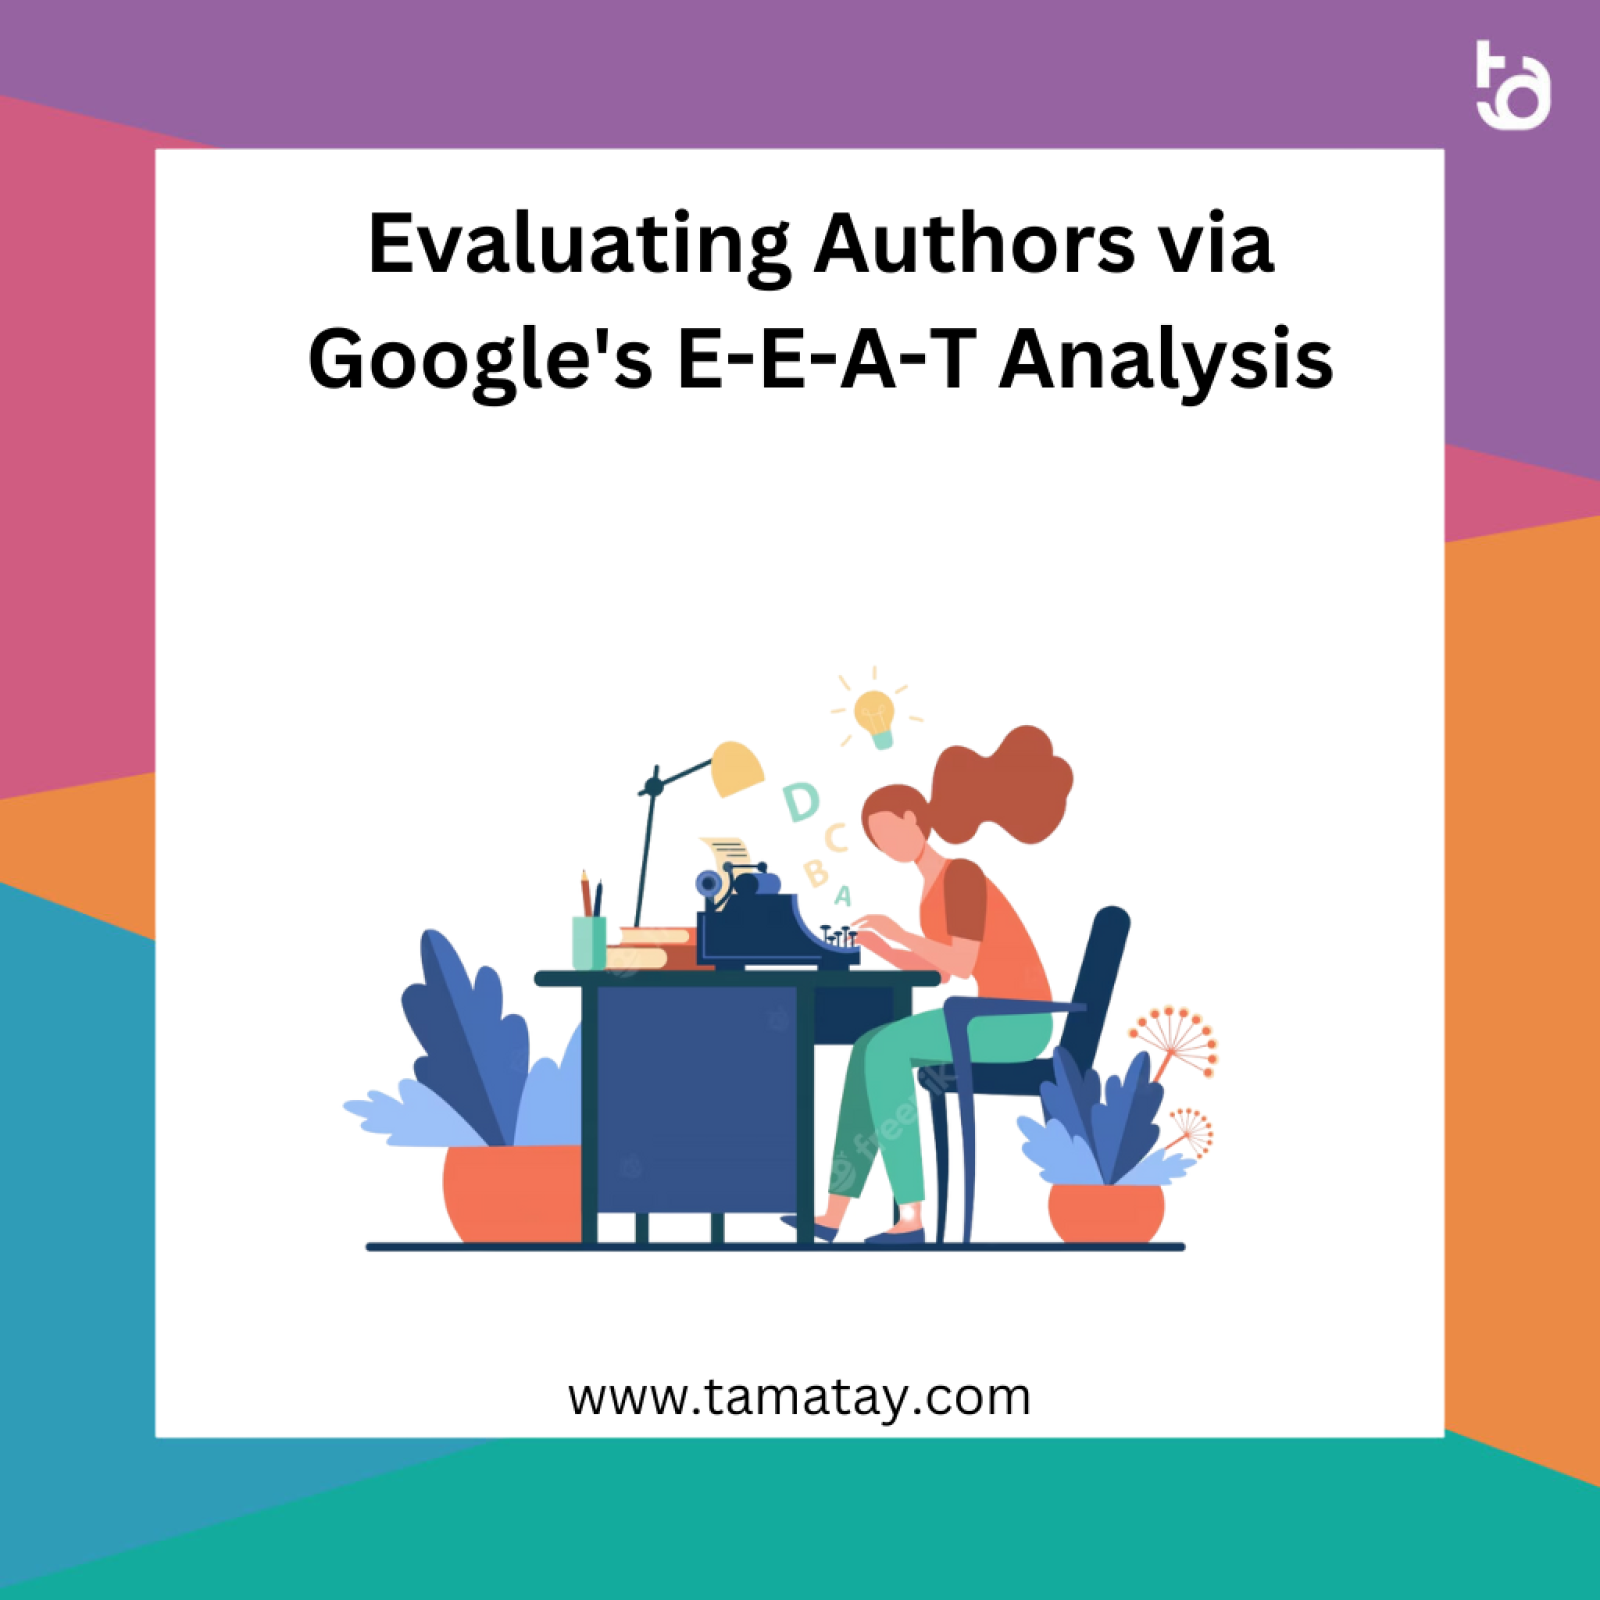 Evaluating Authors via Google’s E-E-A-T Analysis